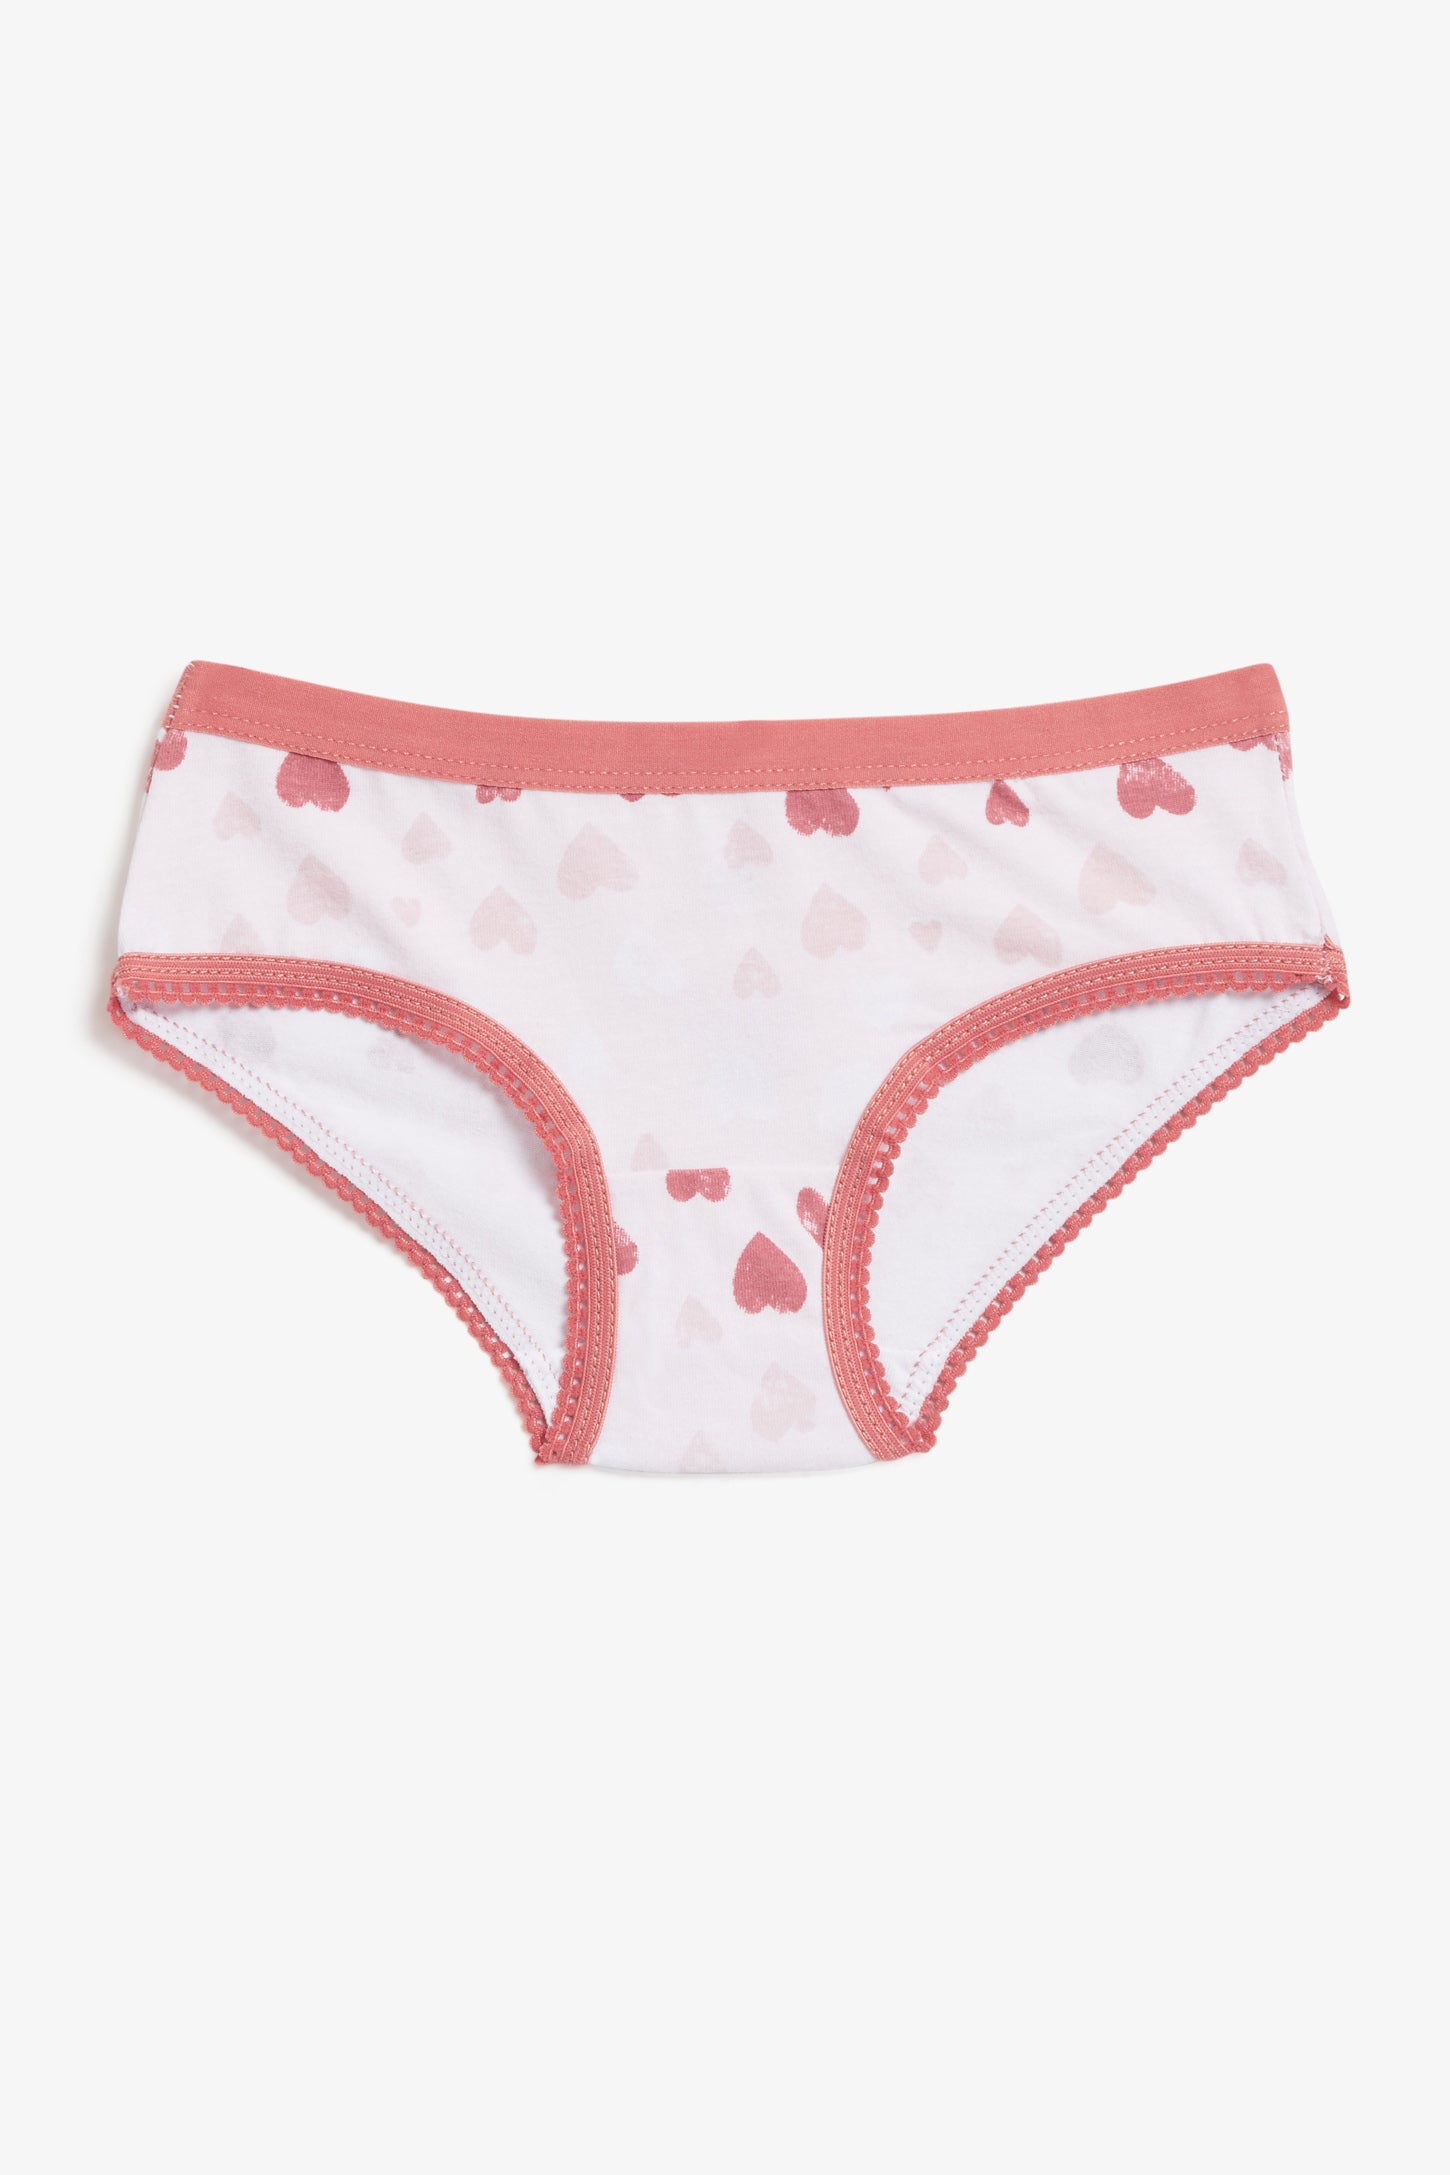 Culotte bikini, 4/20$ - Enfant fille && PARFUM DE ROSE